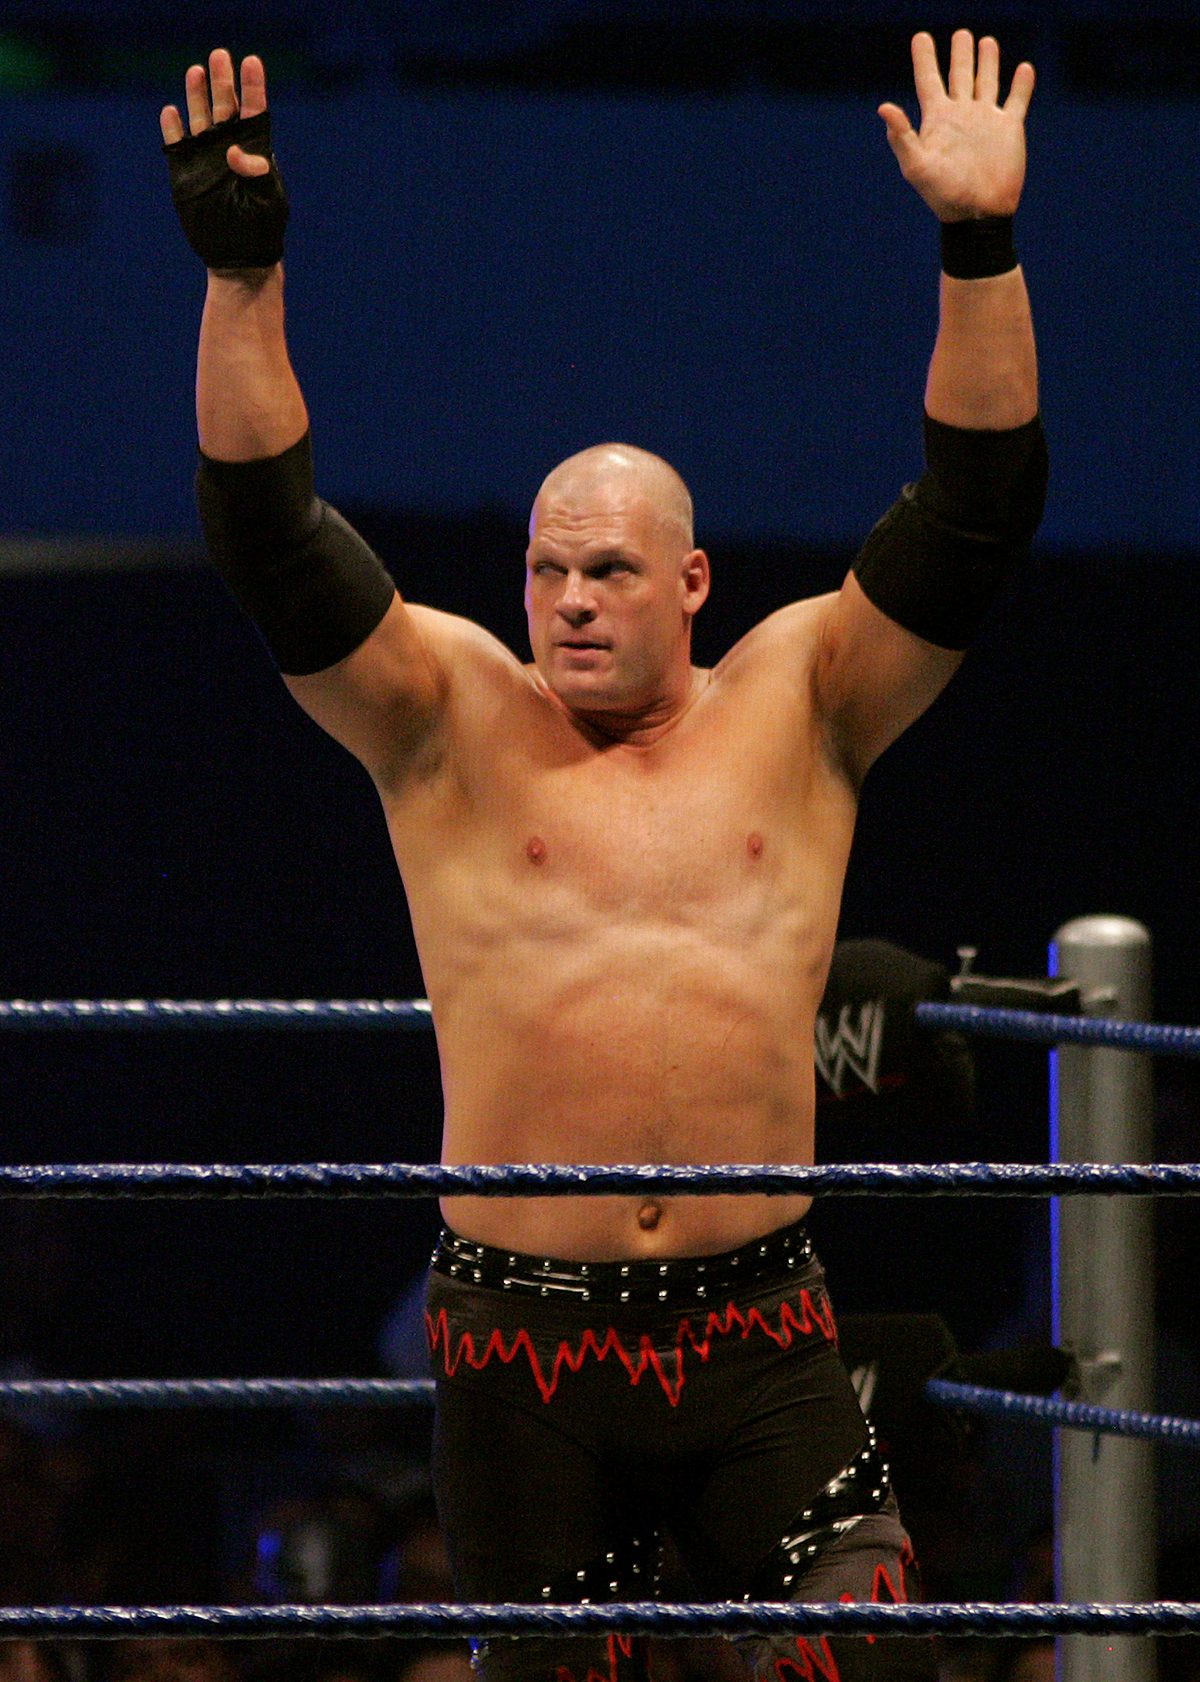 Wwe Wrestler Kane Running For Mayor In Tennessee City Insidehook